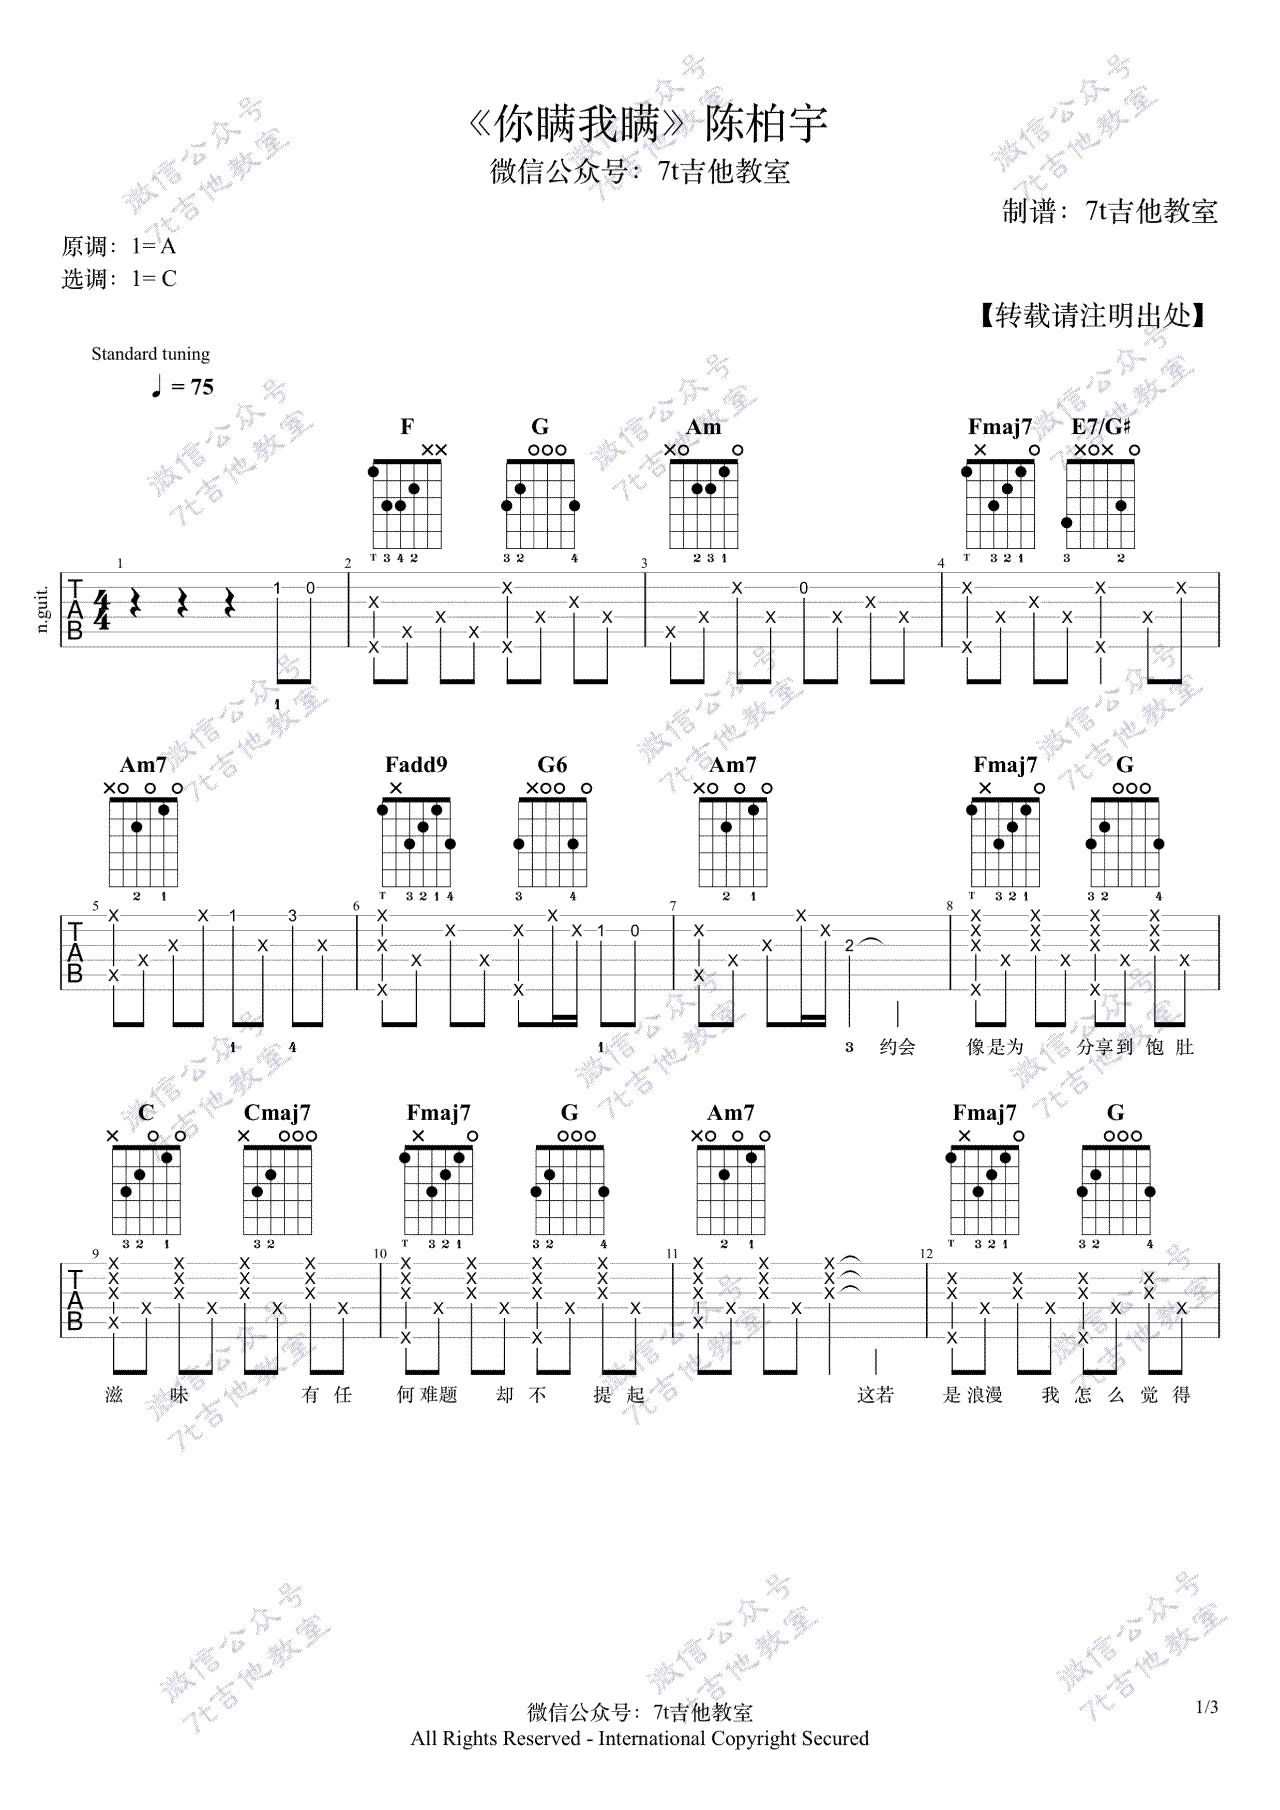 ★ 陳柏宇-尊嚴 琴譜pdf-香港流行鋼琴協會琴譜下載 ★